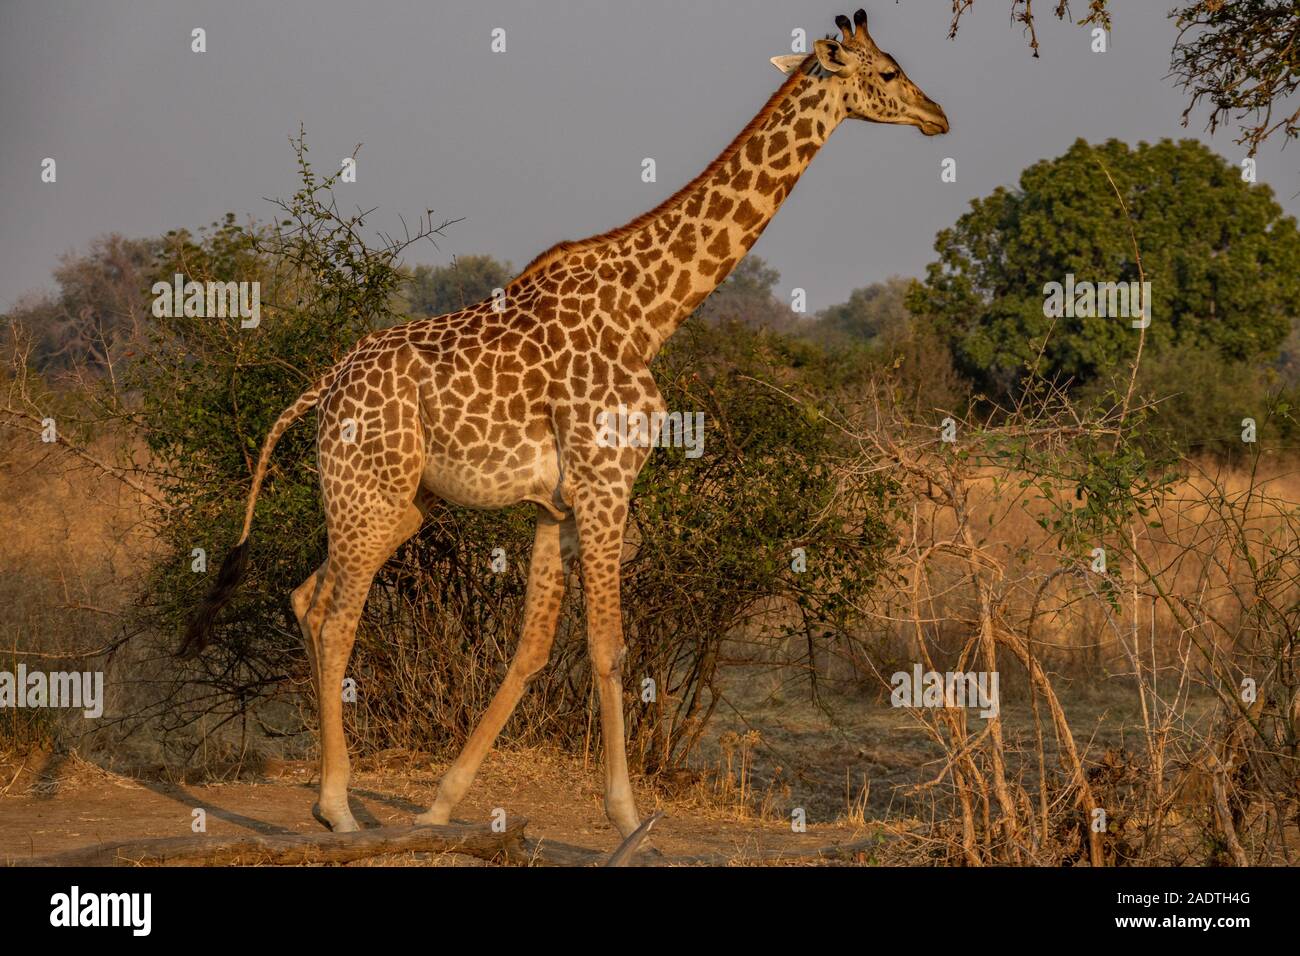 La giraffa a piedi nella natura selvaggia, vista di profilo Foto Stock